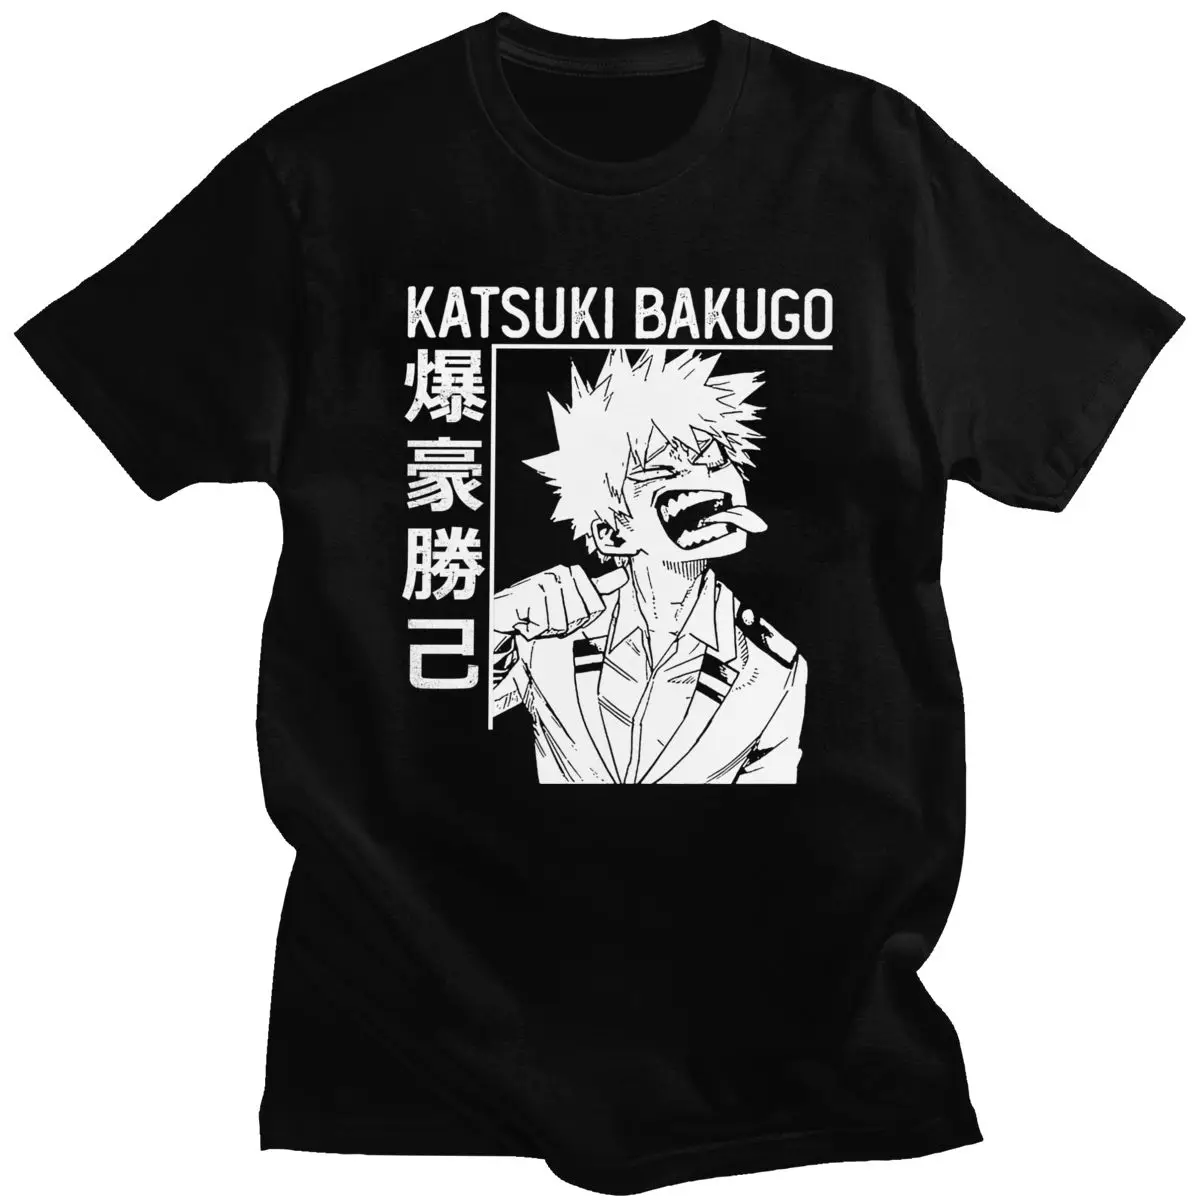 Sjove Mænd Katsuki Bakugo Boku Ikke Helt den Akademiske verden T-shirt i Bomuld Animationsfilm Tee Shirt Kort Ærme Manga Alle Kan Tshirt Merch Toppe